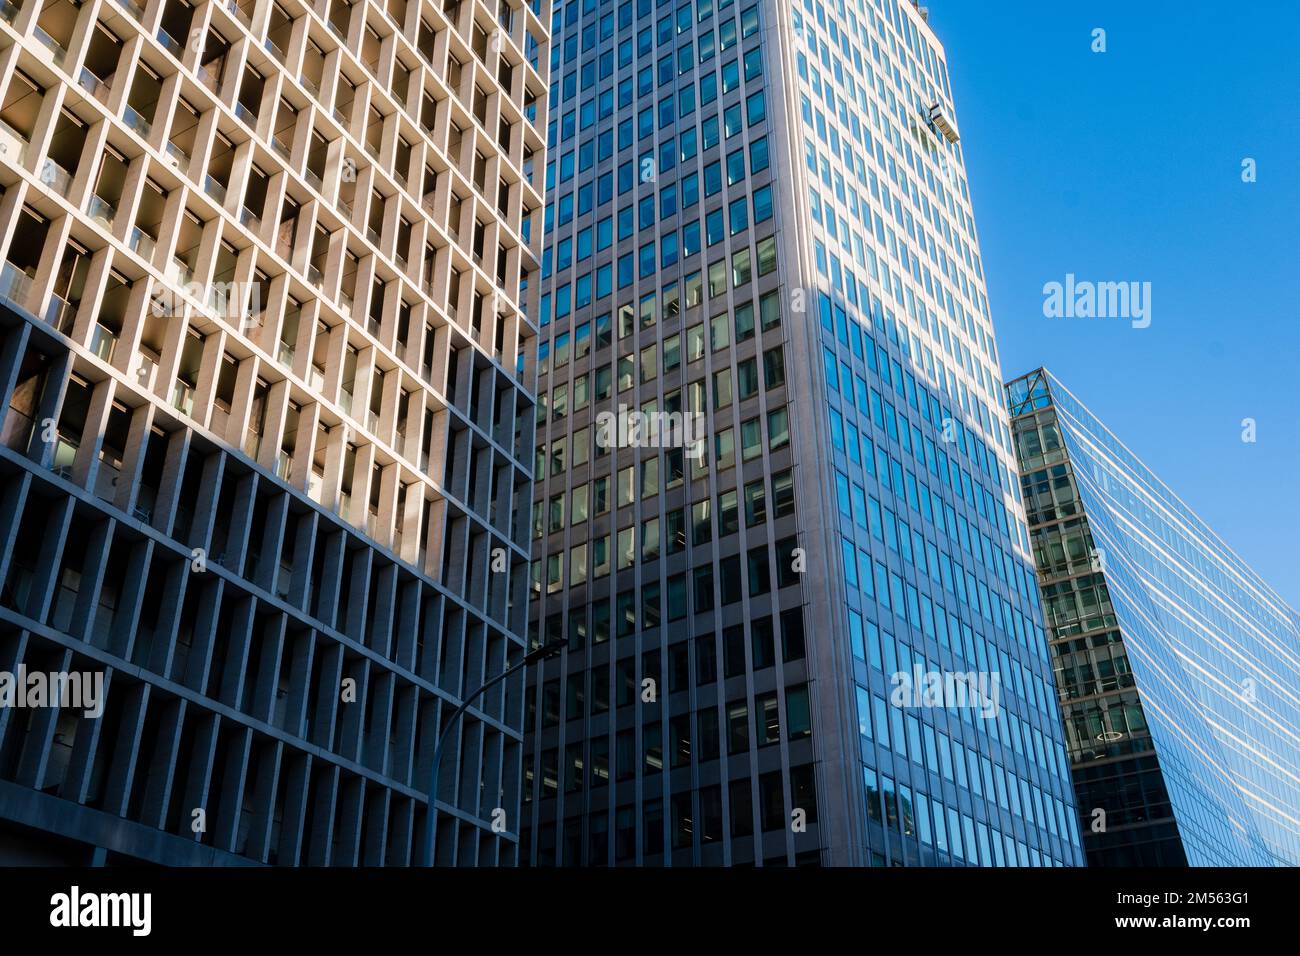 Nettoyage des fenêtres sur l'architecture contemporaine de bureau, Londres Banque D'Images